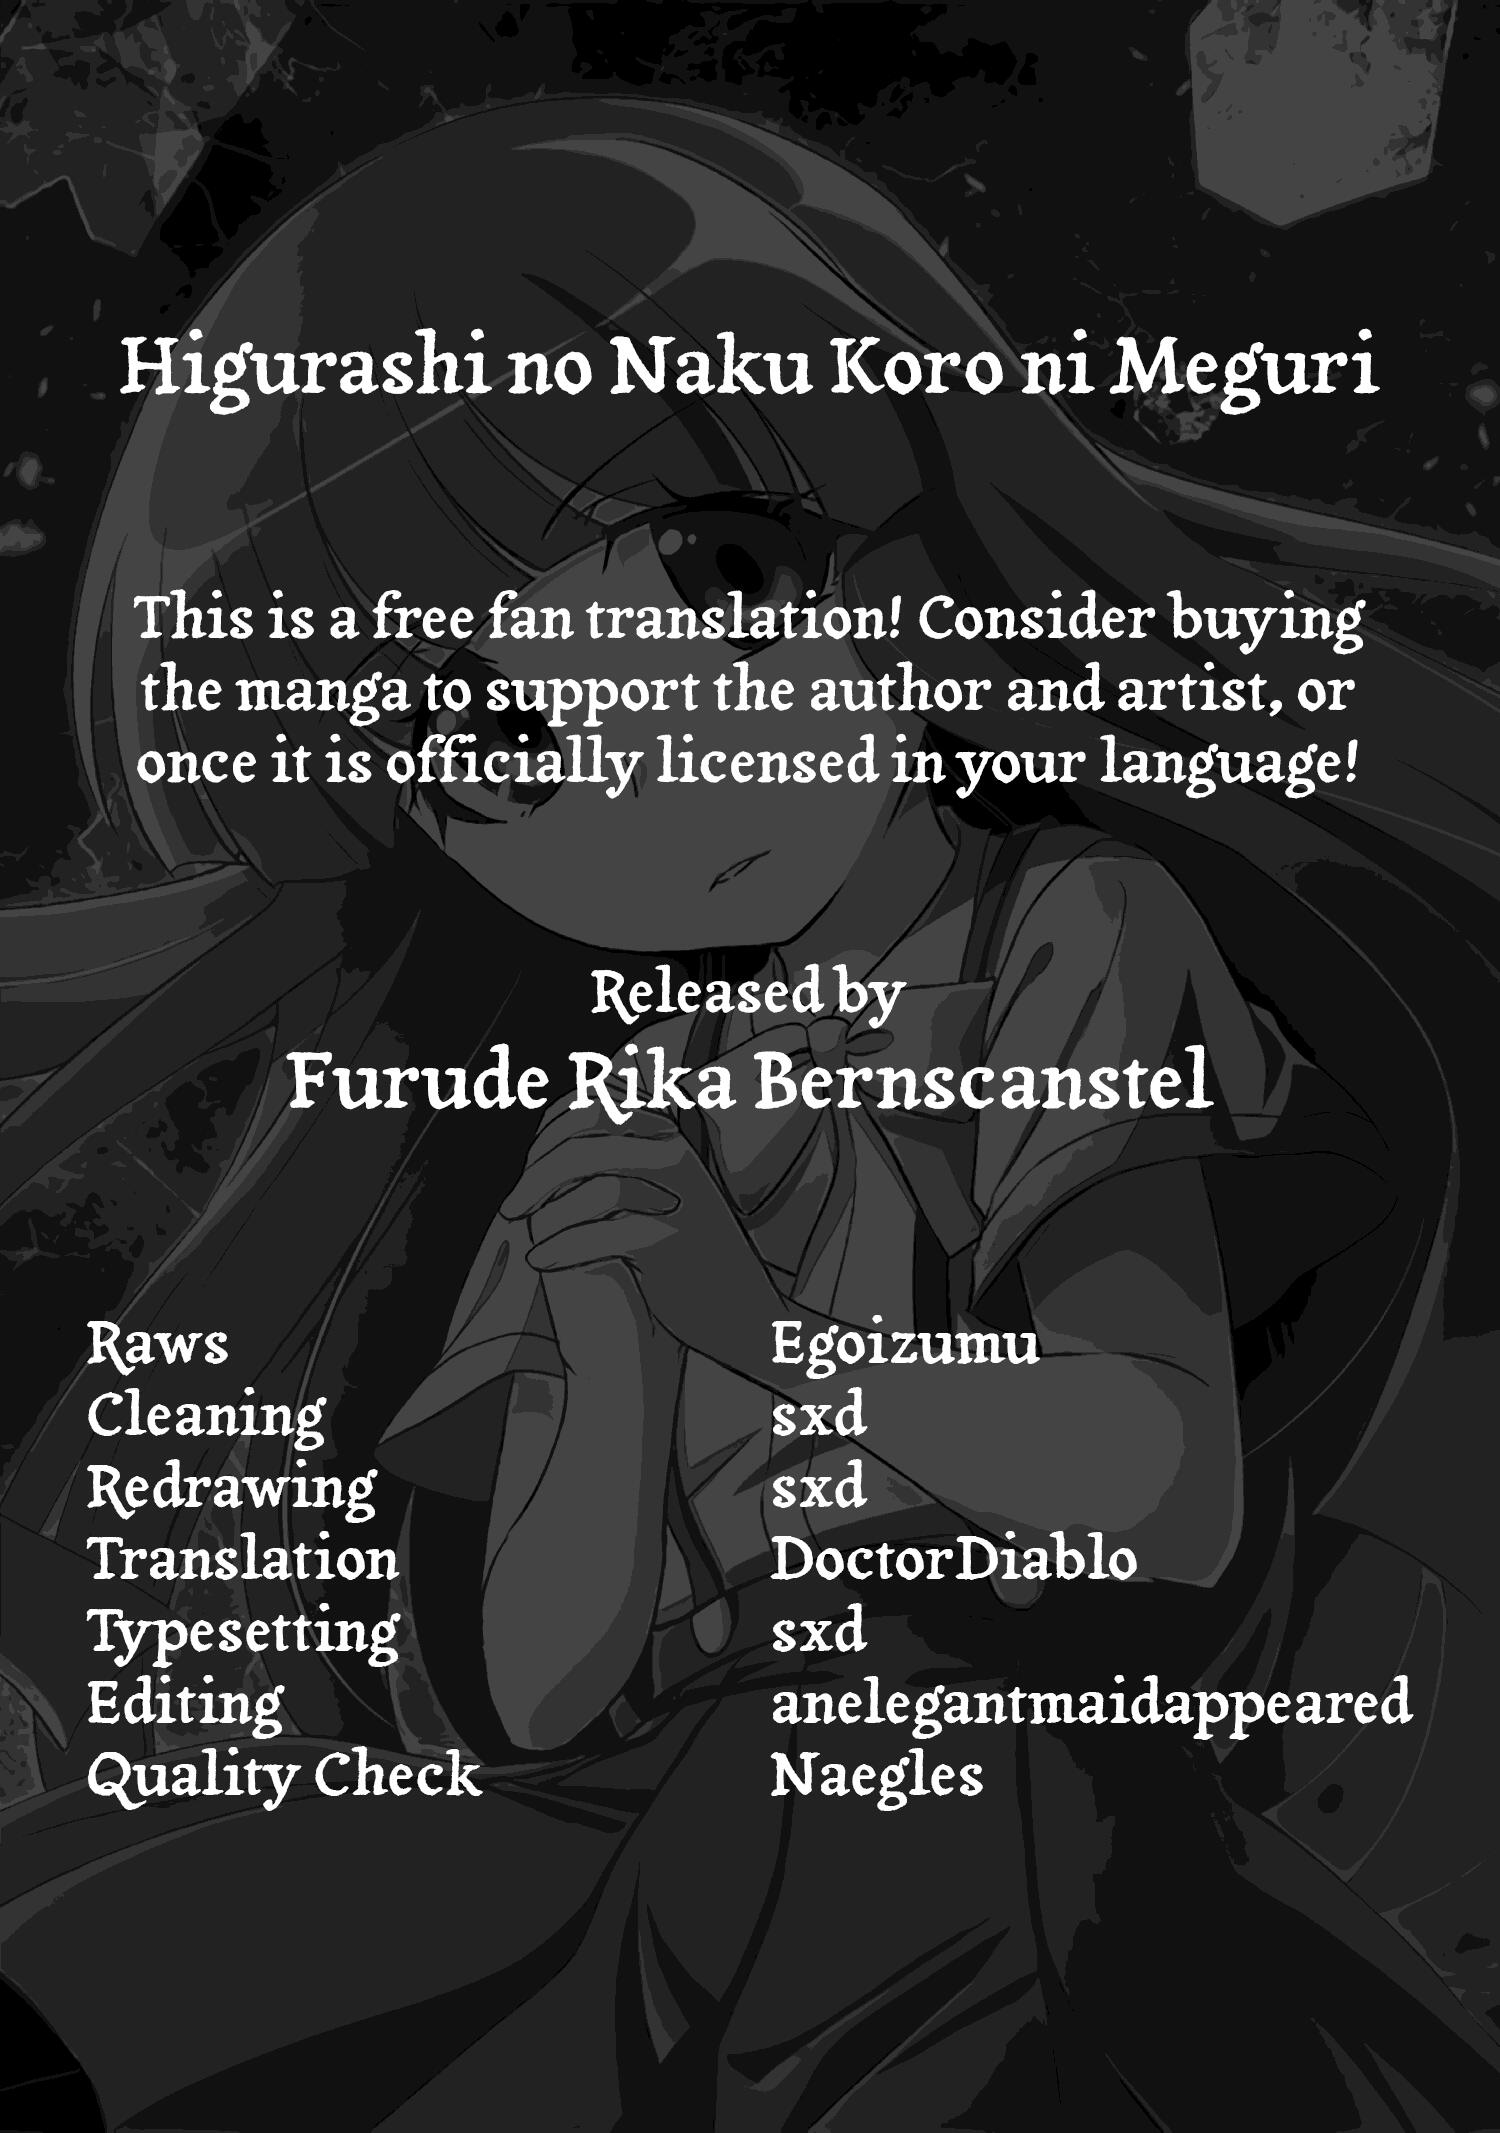 Higurashi no Naku Koro ni Meguri, Vol 1 Chap. 4.2, Satokowashi-hen Part  4.2